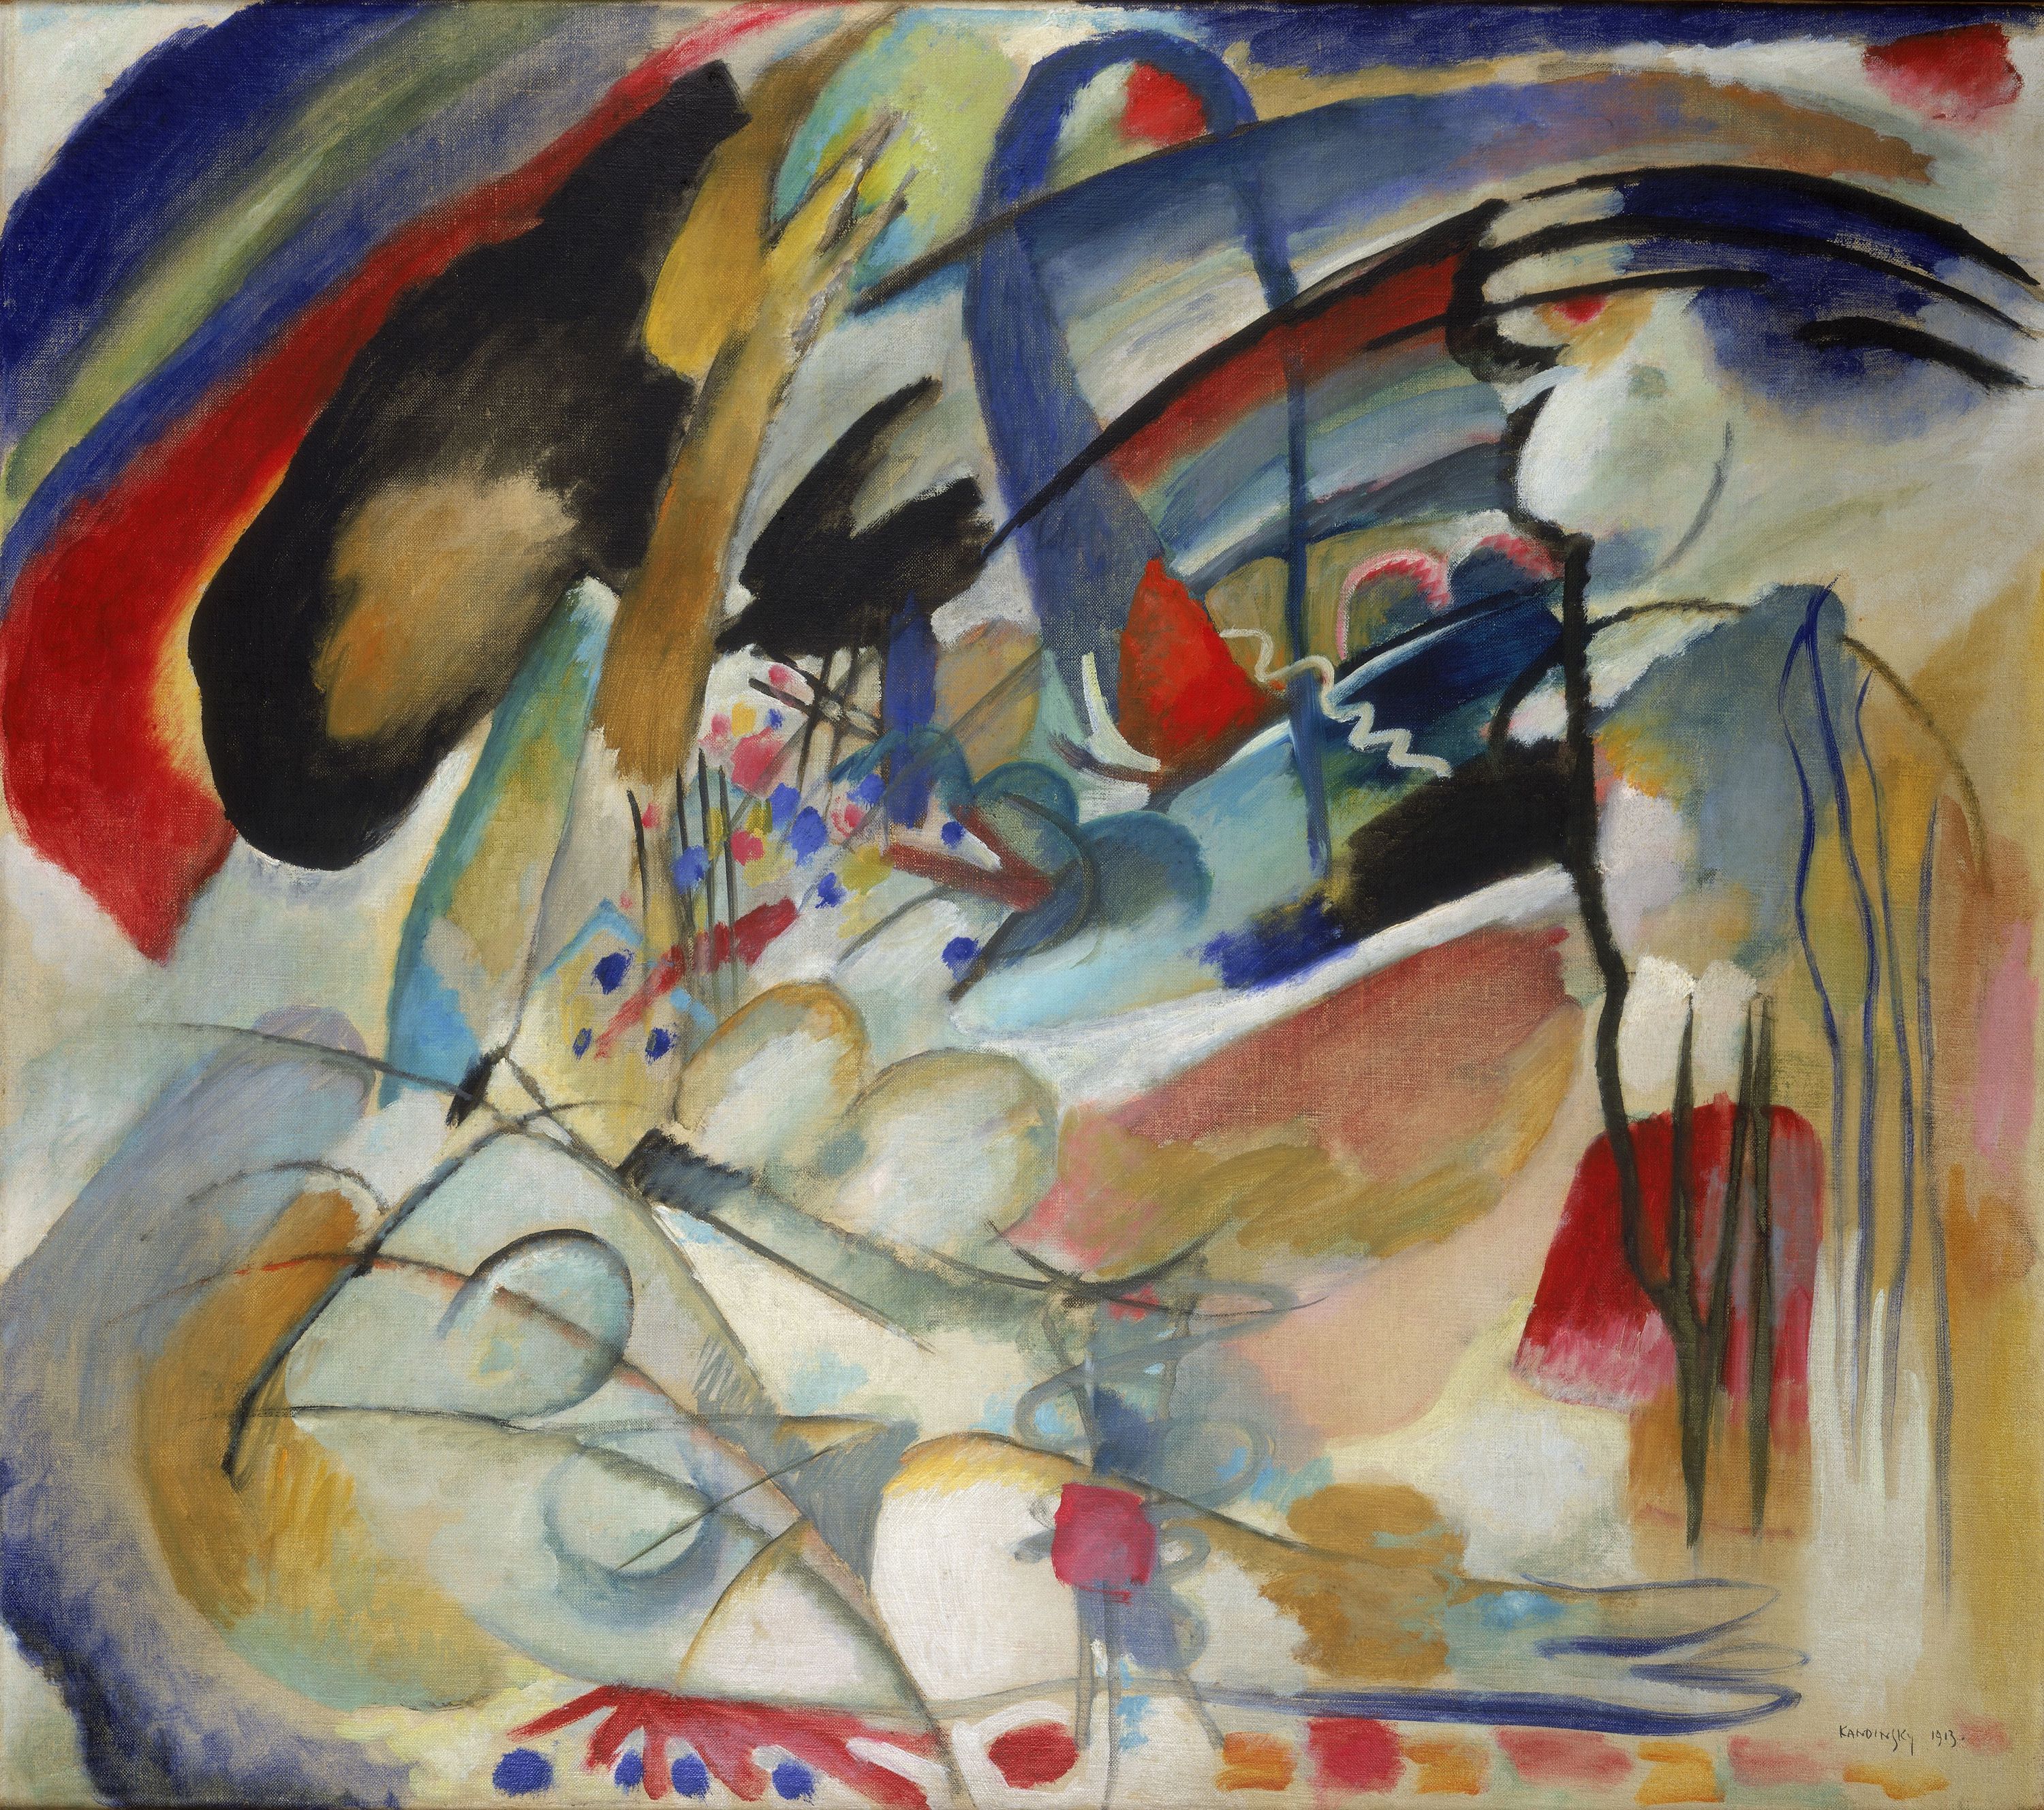 بداهه پردازی 33 (Orient I) by Wassily Kandinsky - 1913 - 88.5 x 100.5 cm 